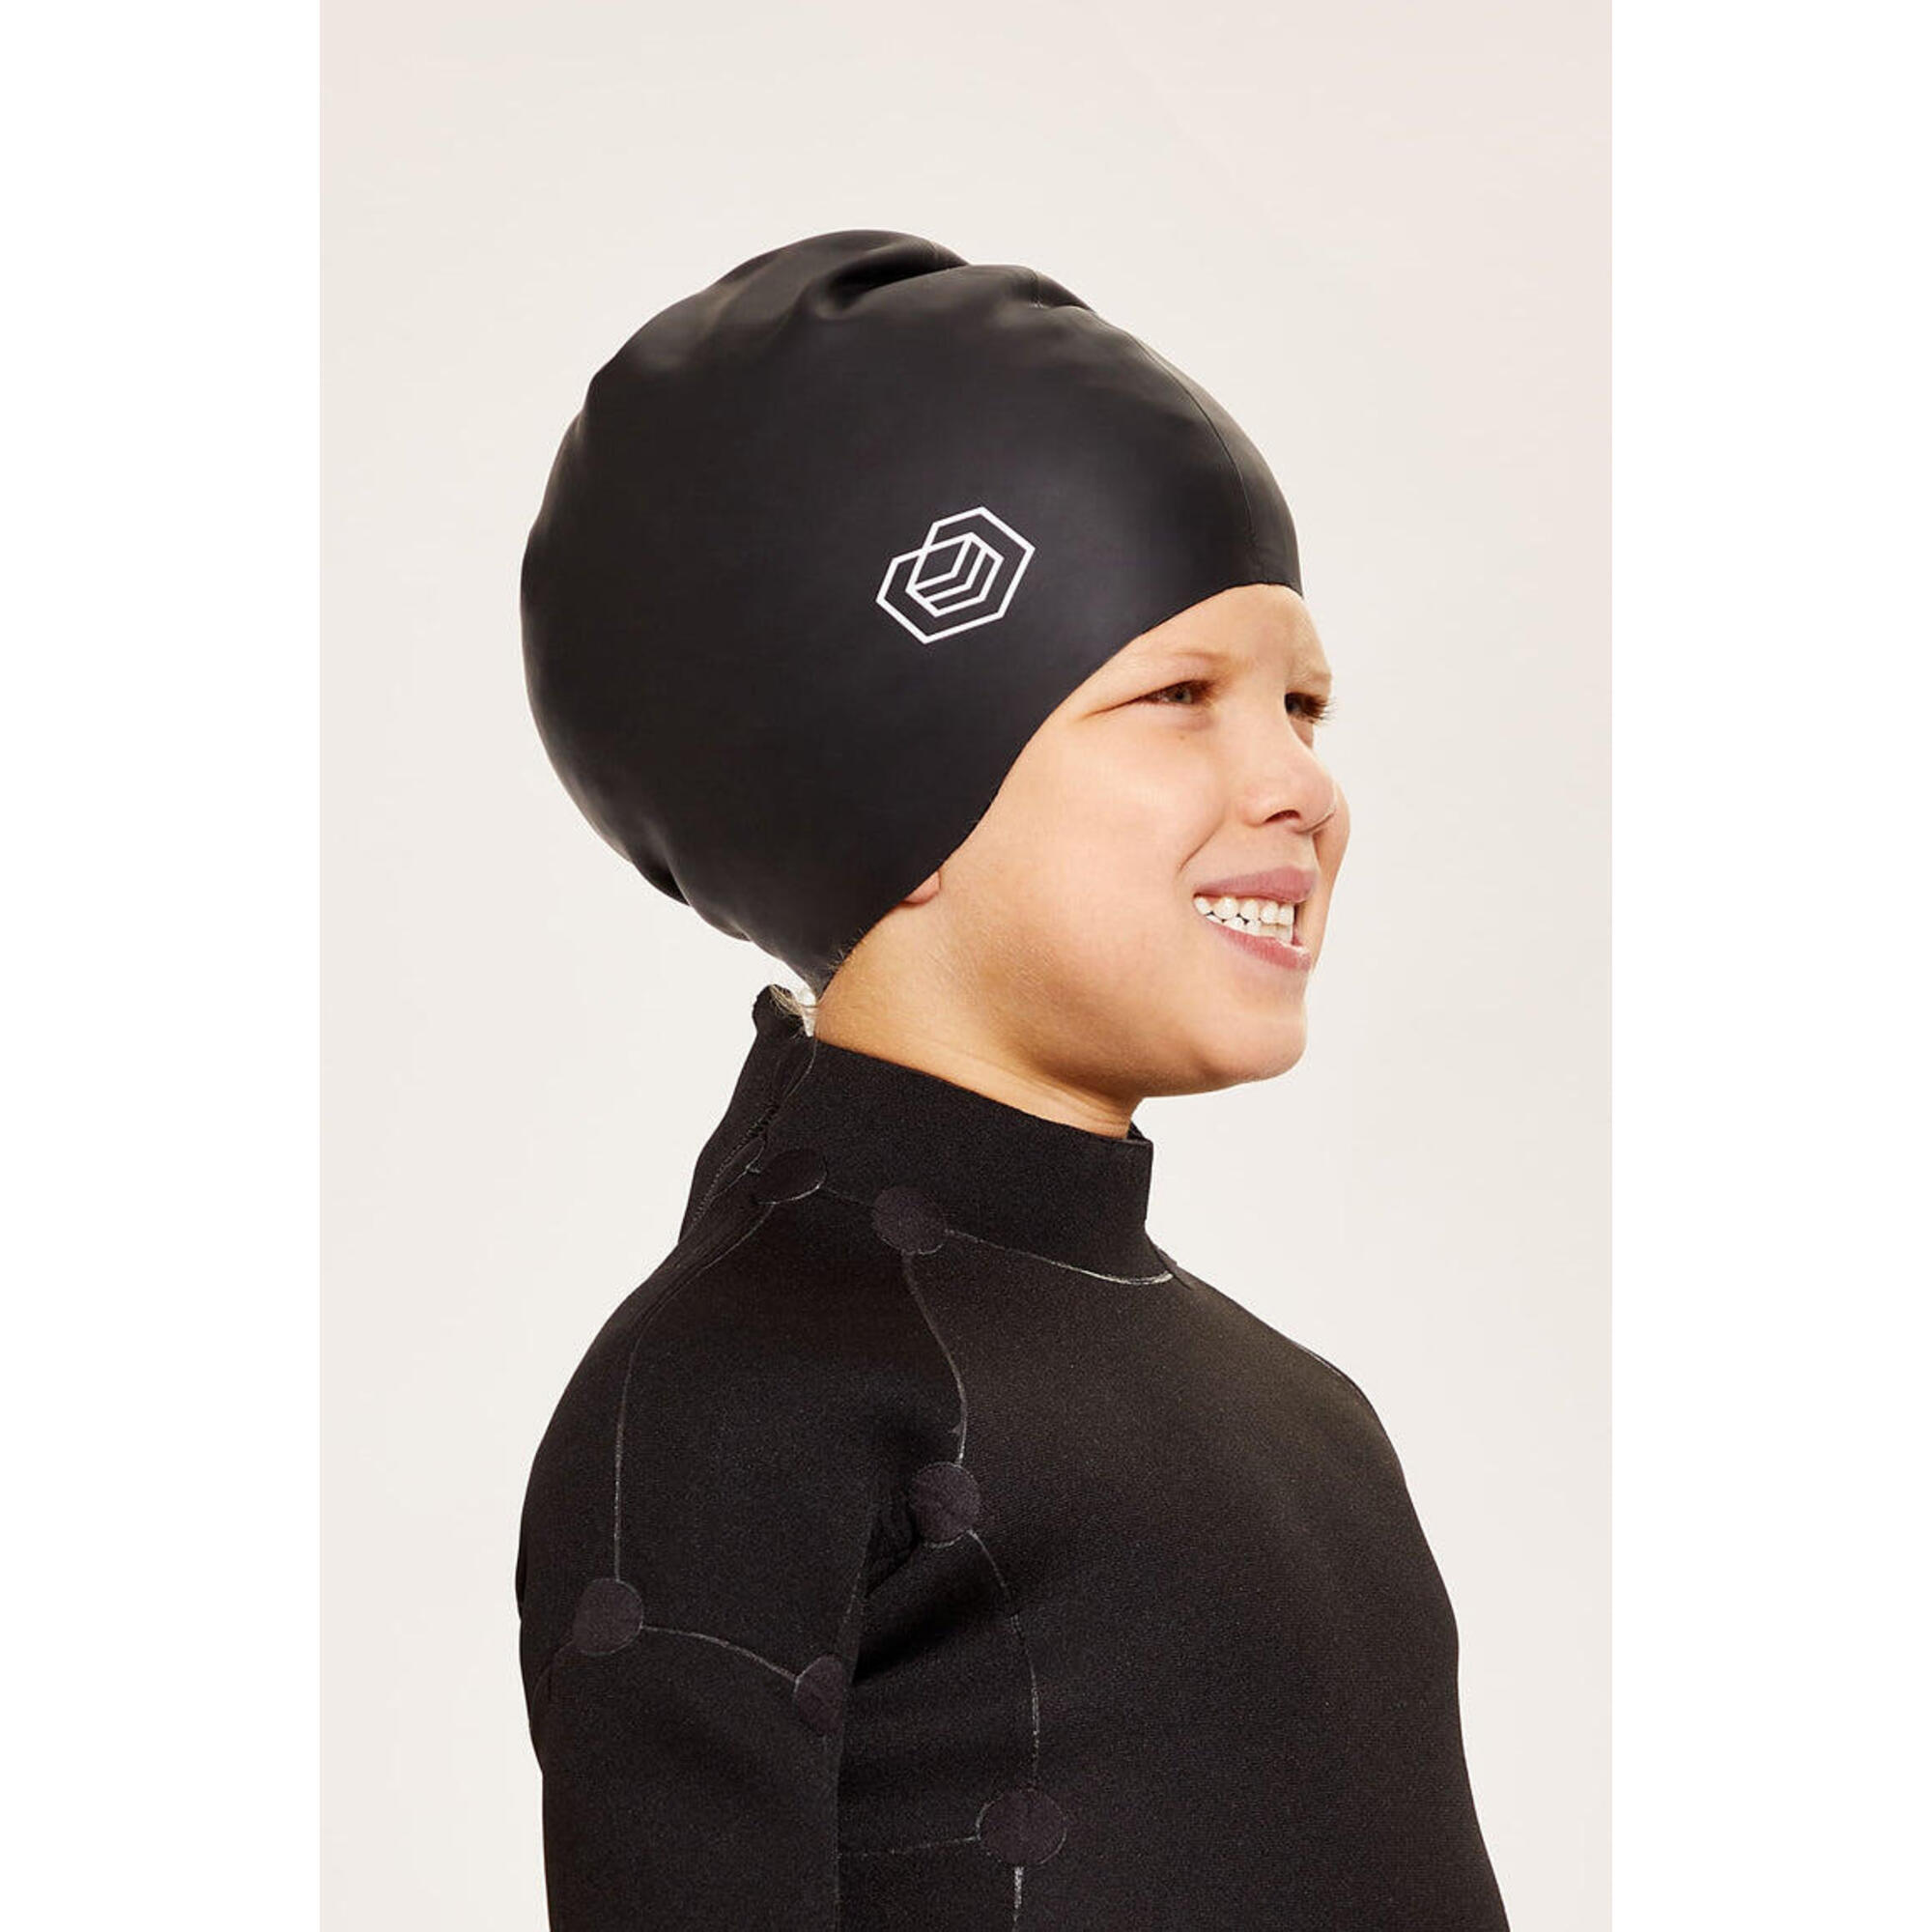 Children's Swim Cap for Long Hair (Medium) - Black 1/5